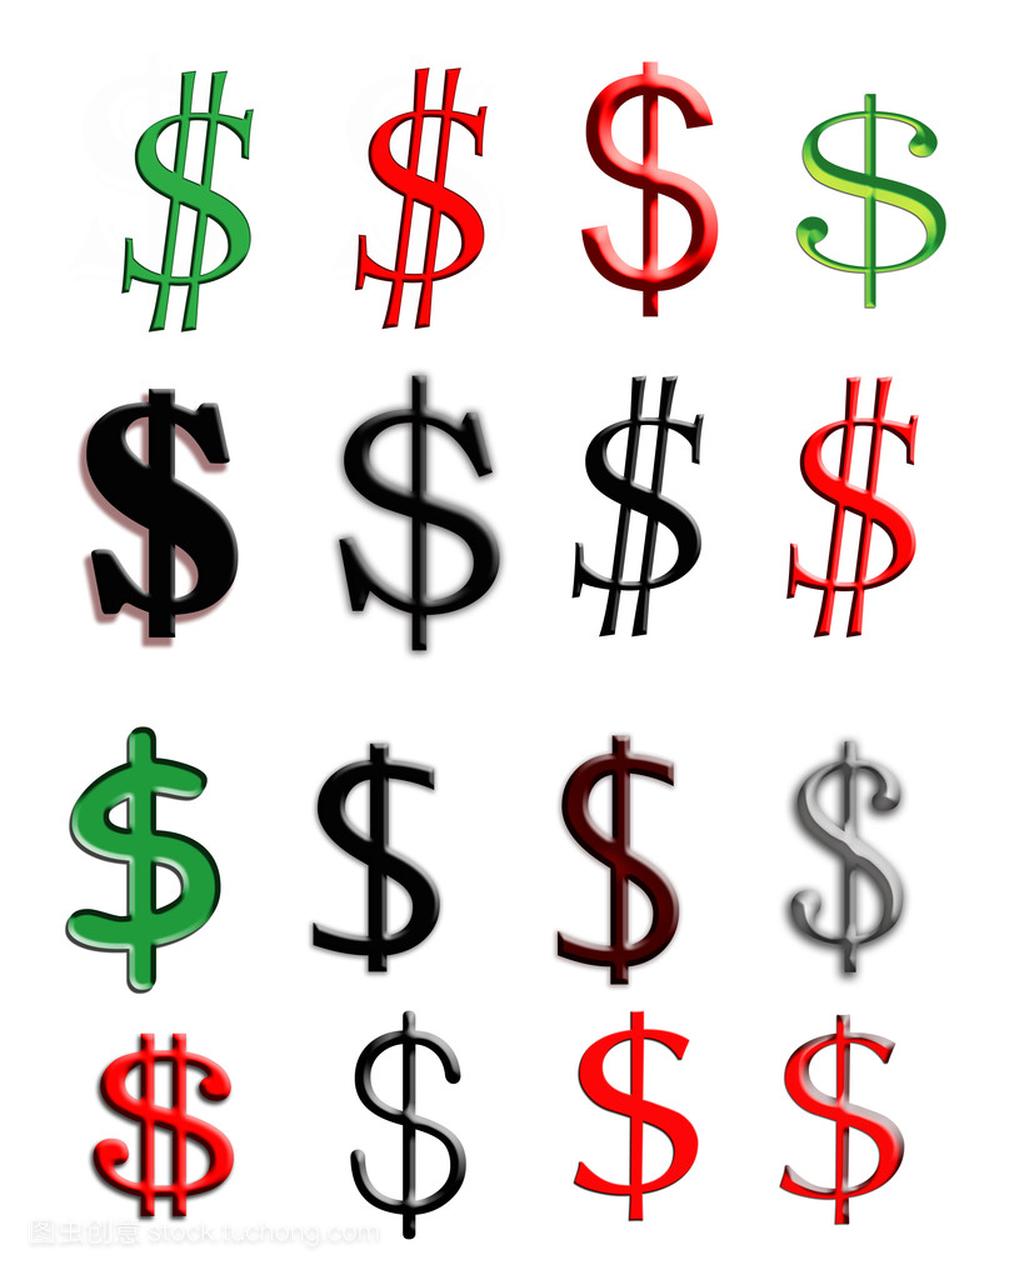 字母 s 指定美元的标志